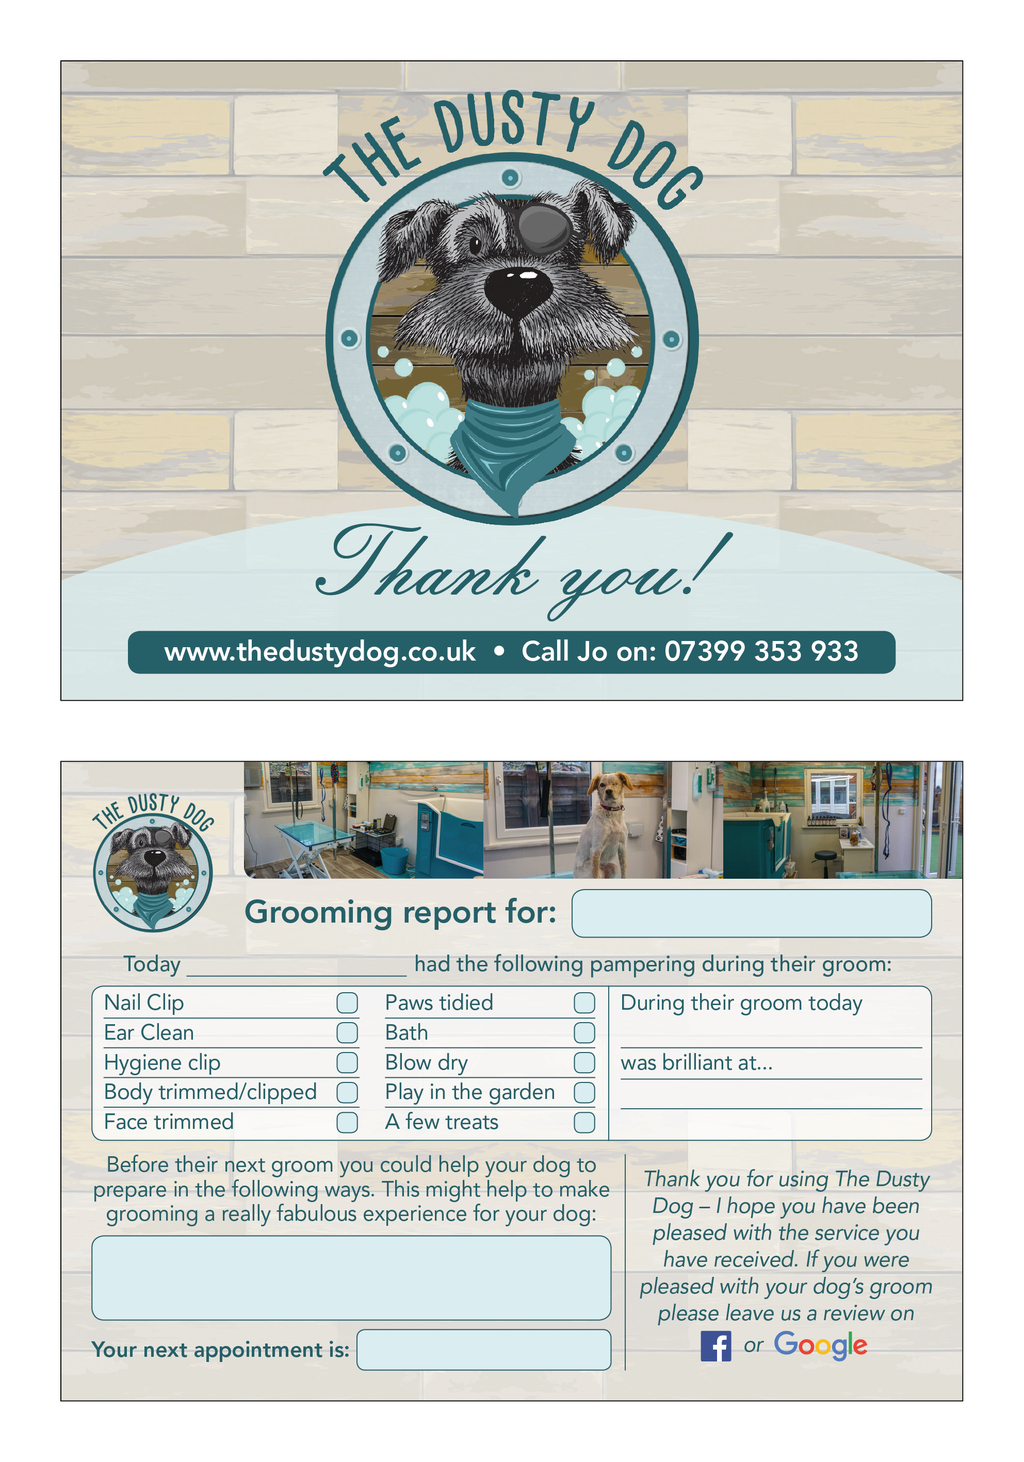 Pet grooming business flyer design